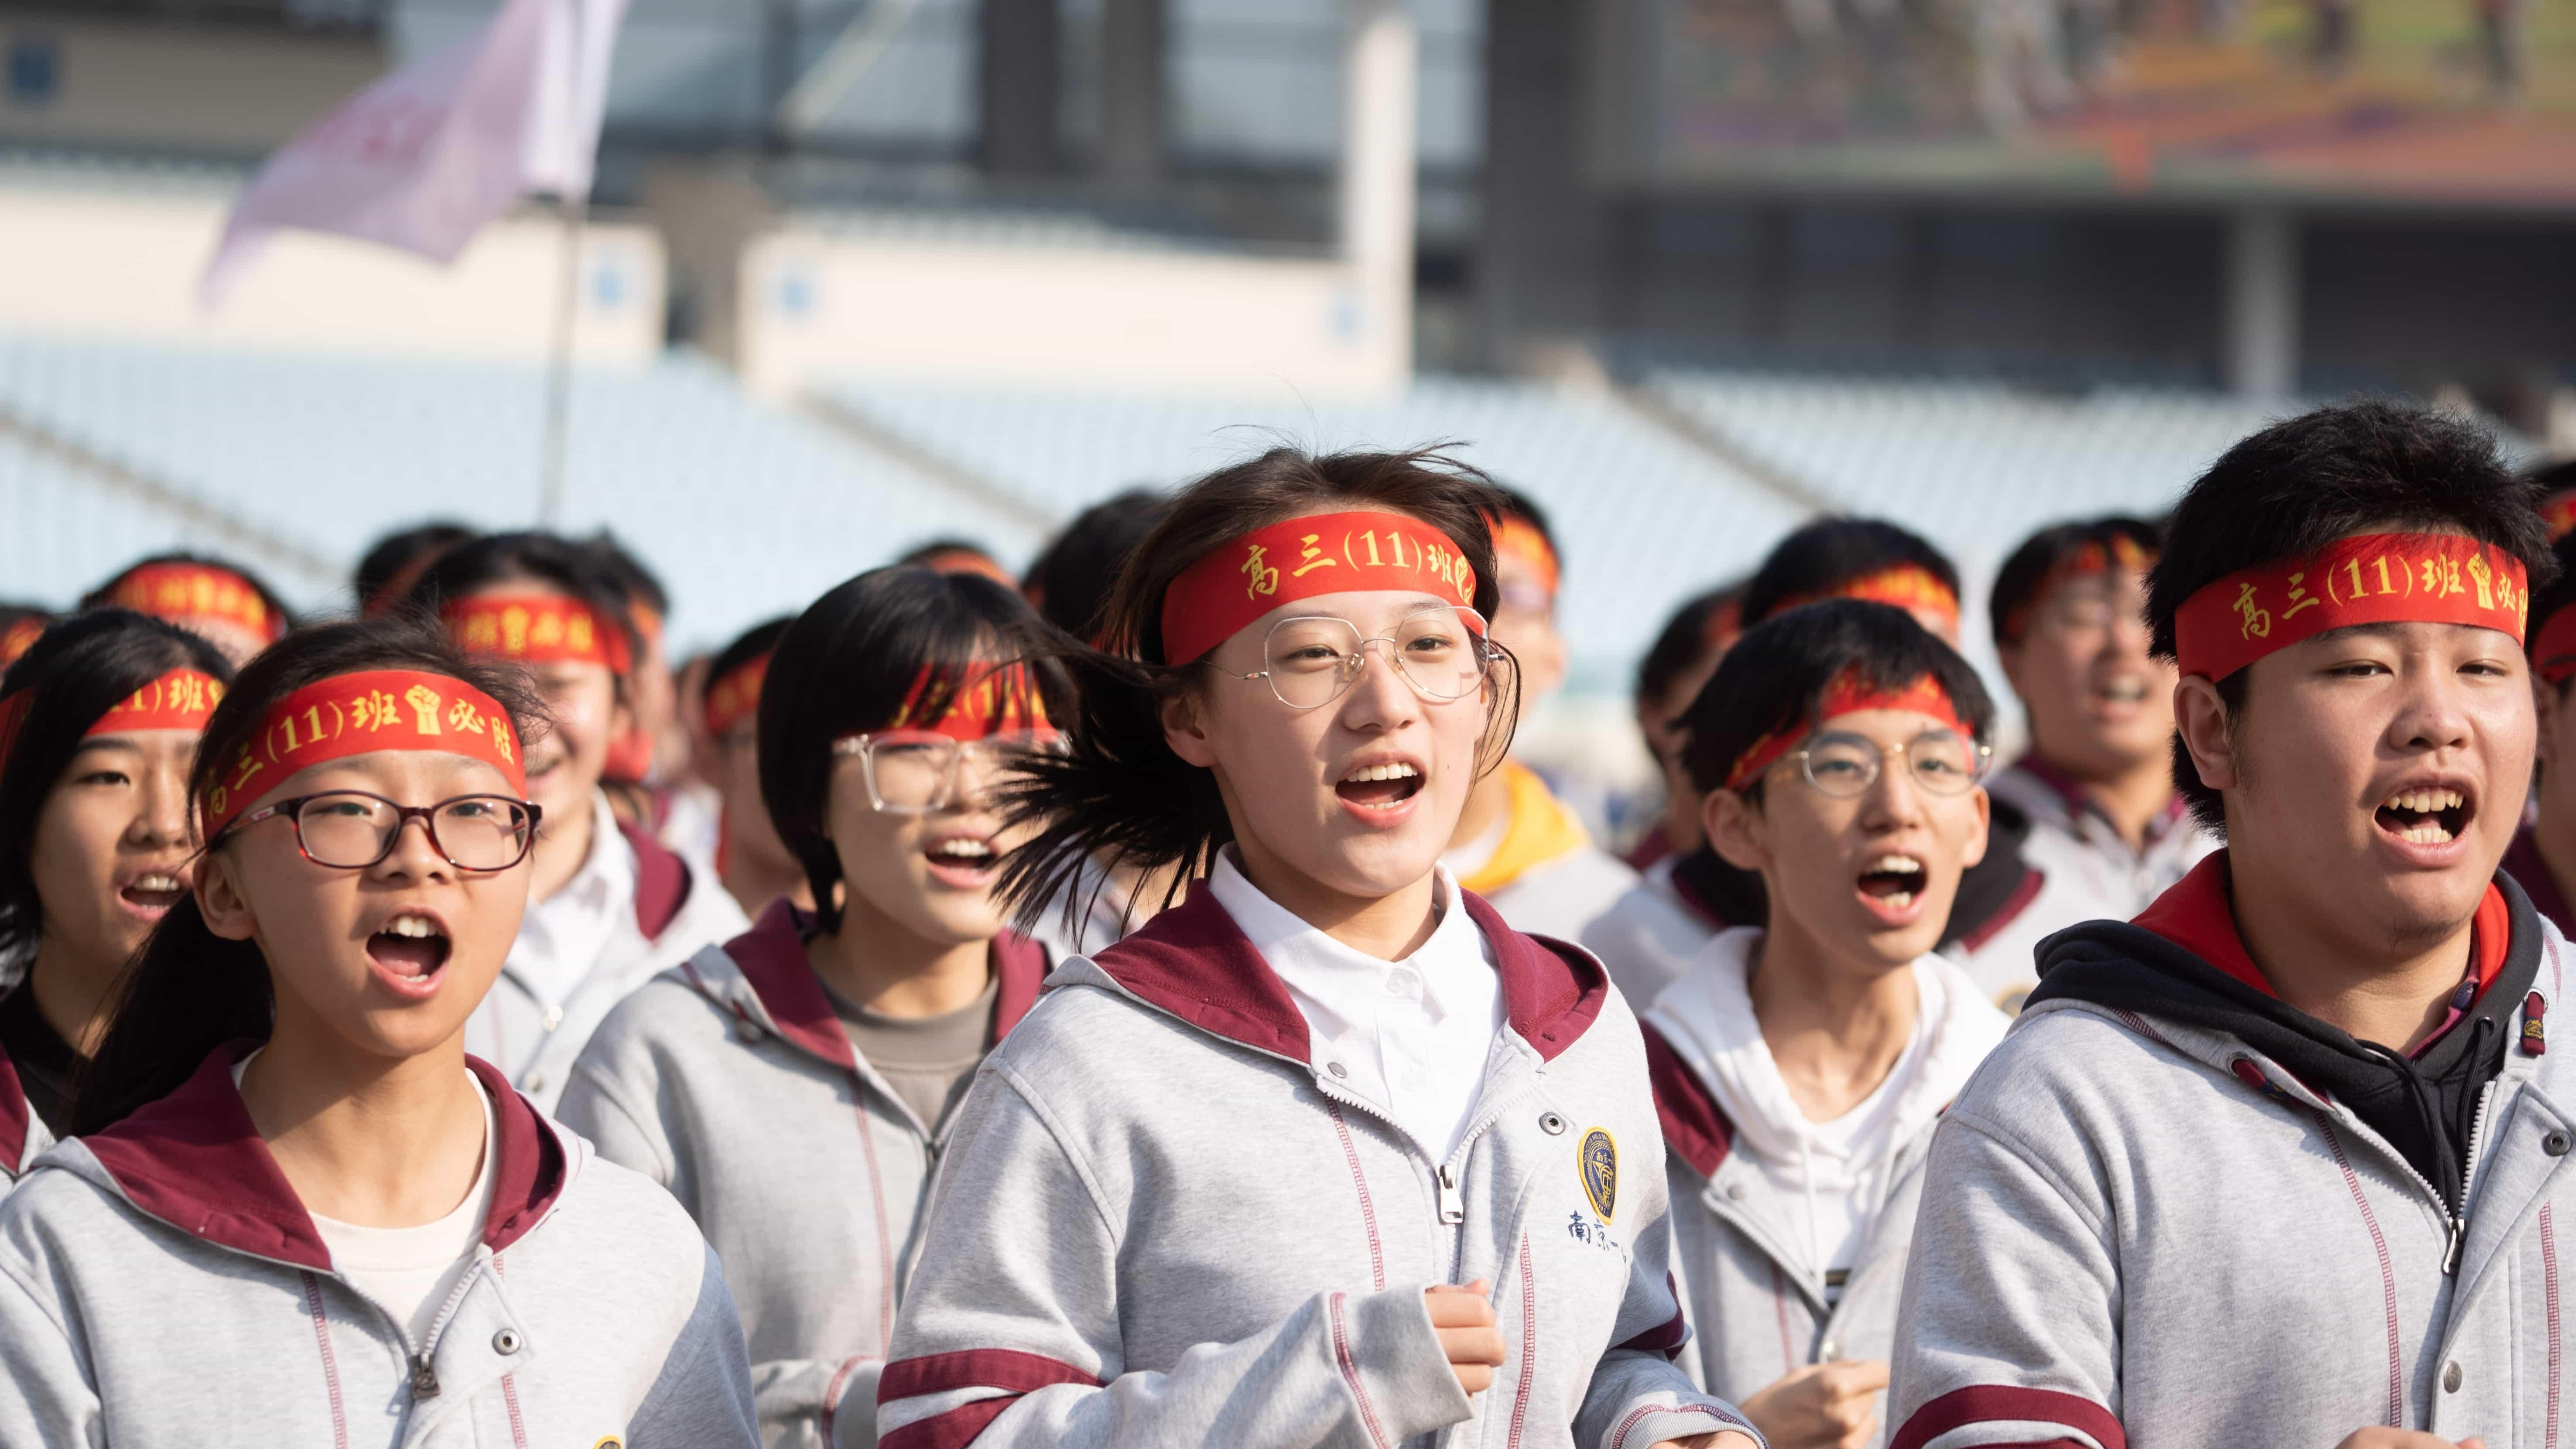 今天, 南京这所“奔跑”的学校刷屏! 百队庆百年, 一起向未来